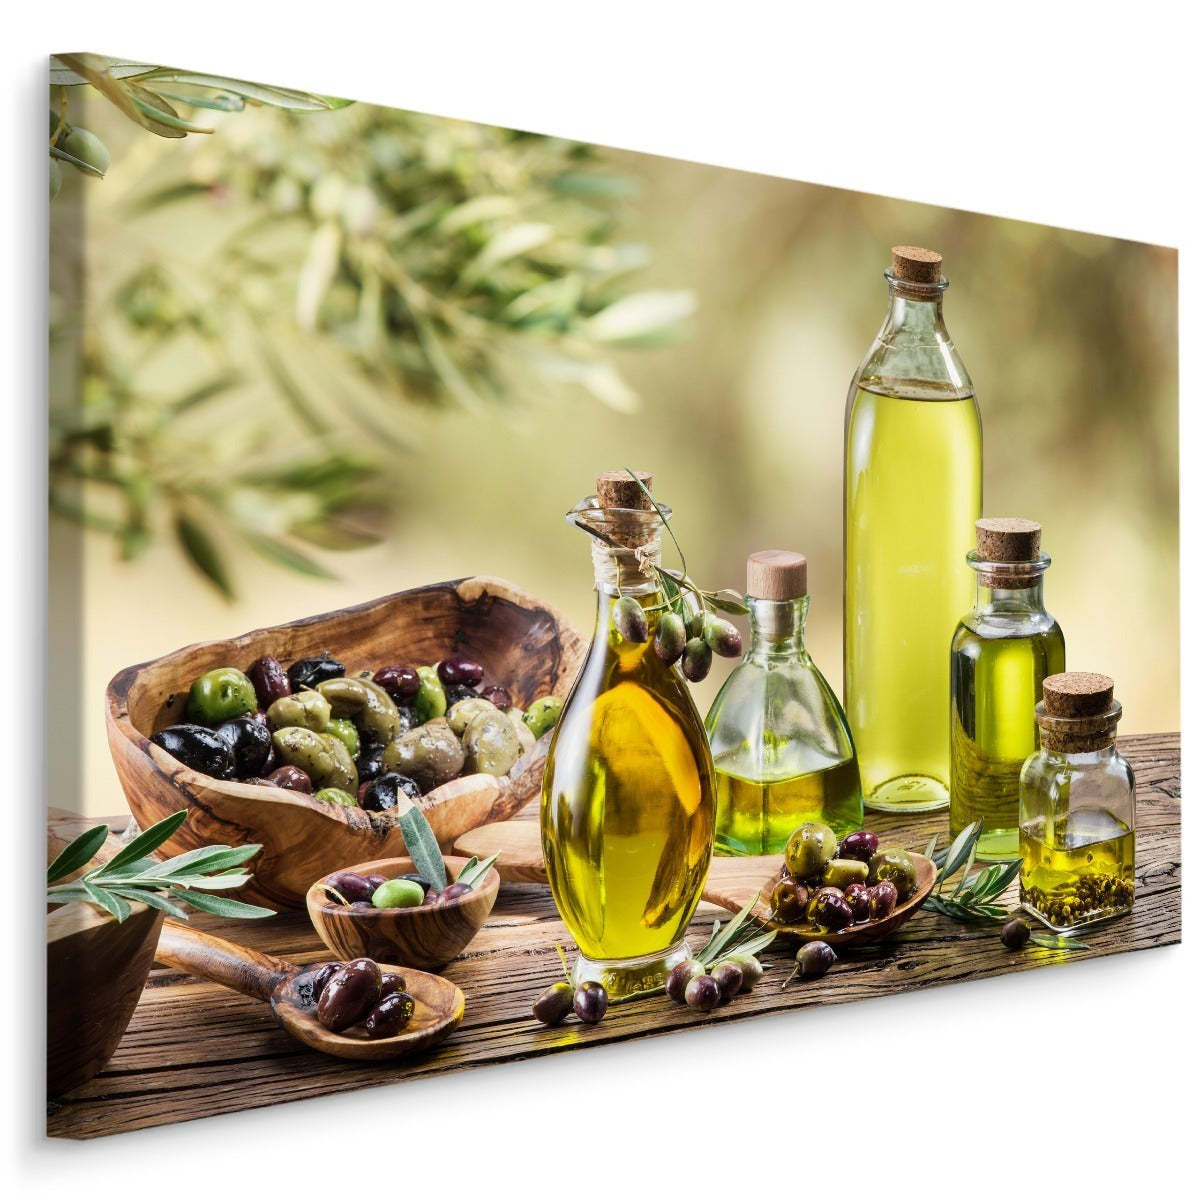 Olivenolje med krydder